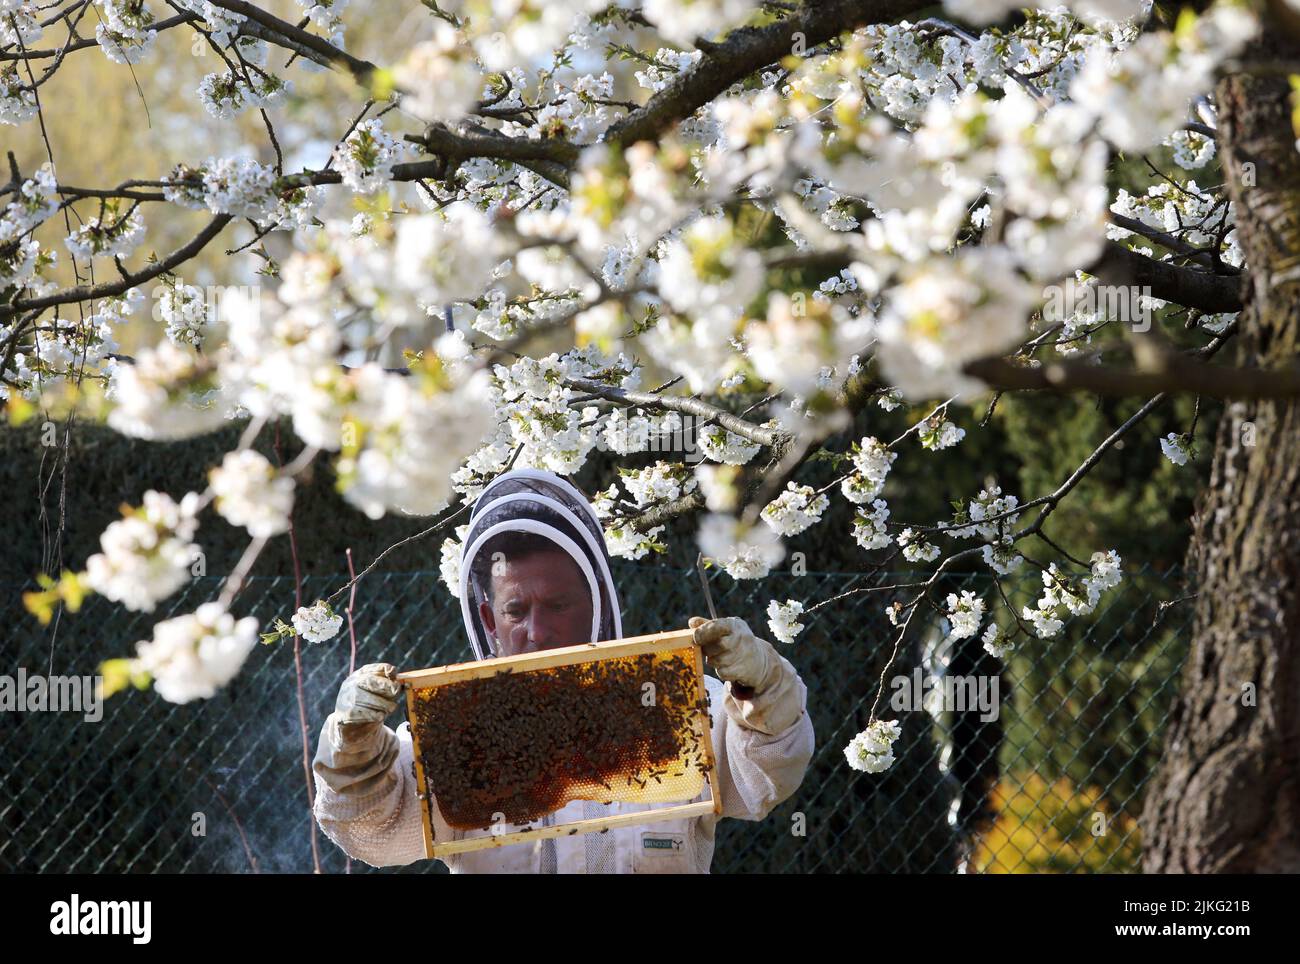 17.04.2022, Alemania, Brandeburgo, Neuenhagen - Apicultor mirando bajo un cerezo en flor a un panal de su colonia de abejas. 00S220417D337CAROEX. Foto de stock